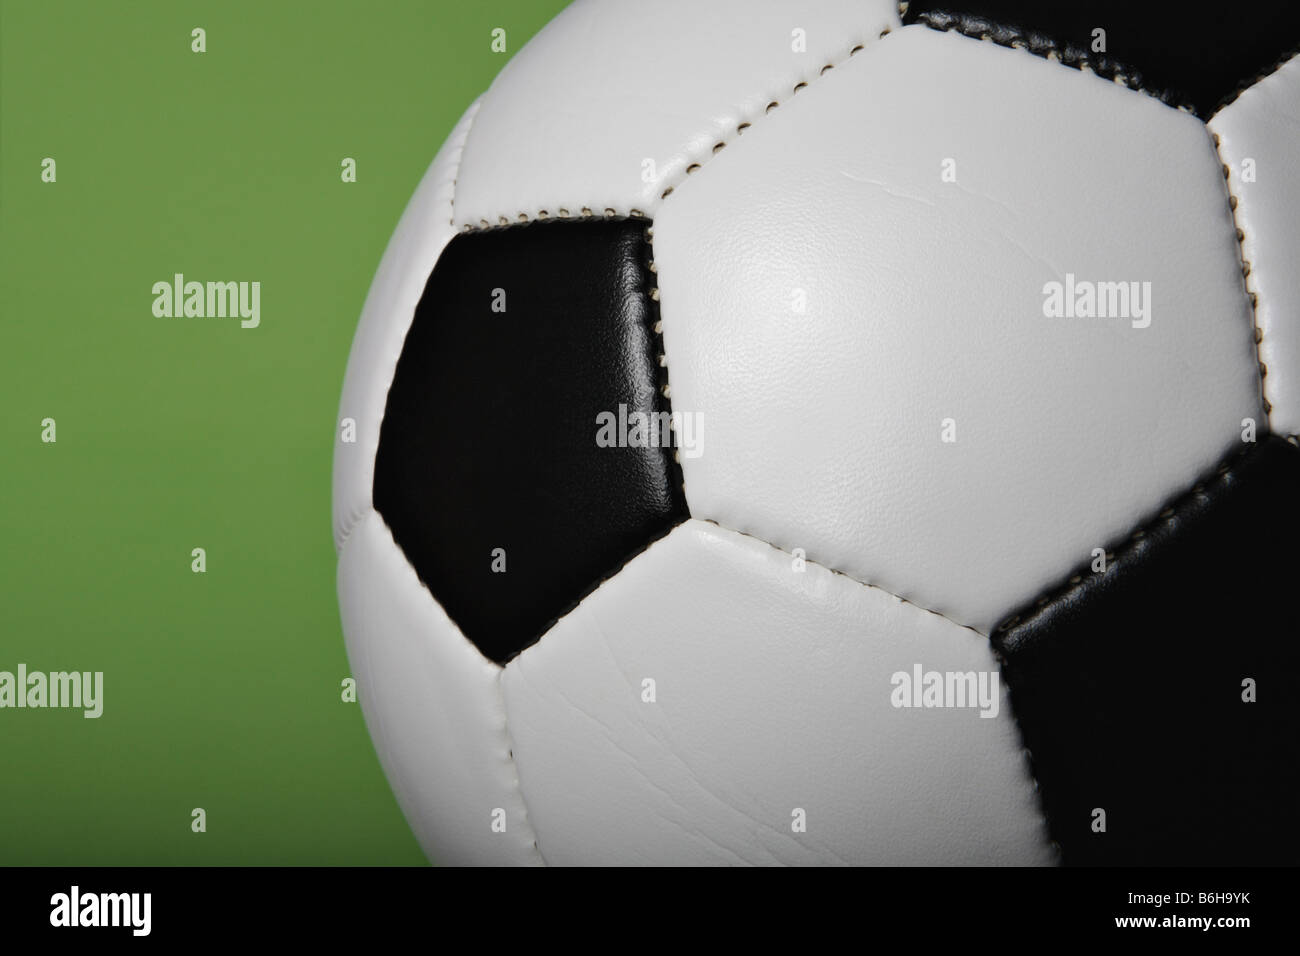 Schwarz / weiß Fußball (Fußball) Ball close-up auf grünem Hintergrund. Stockfoto